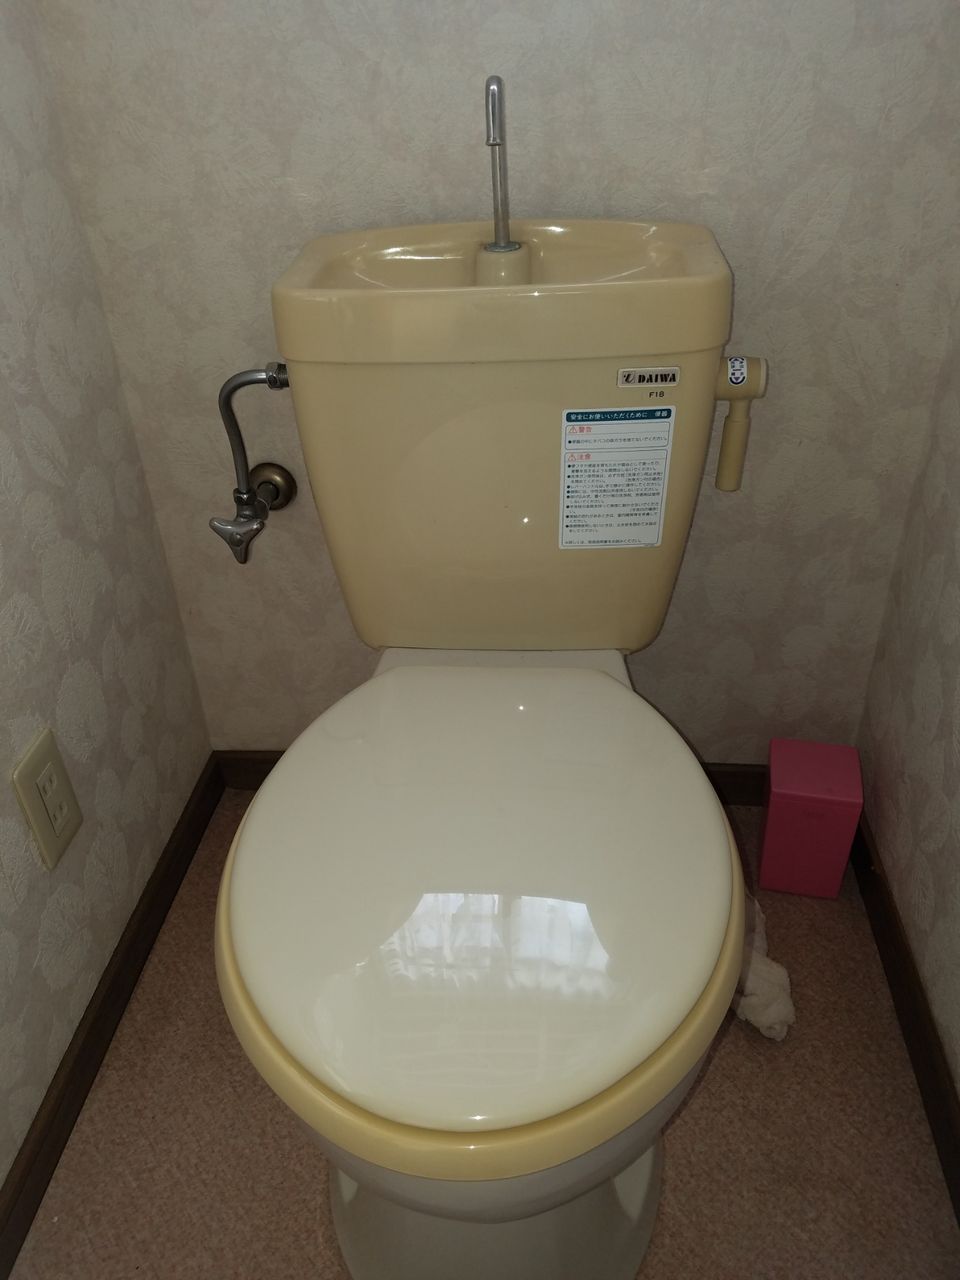 【トイレ水漏れ修理】福岡県飯塚市での施工事例と現場の状況 福岡水道救急